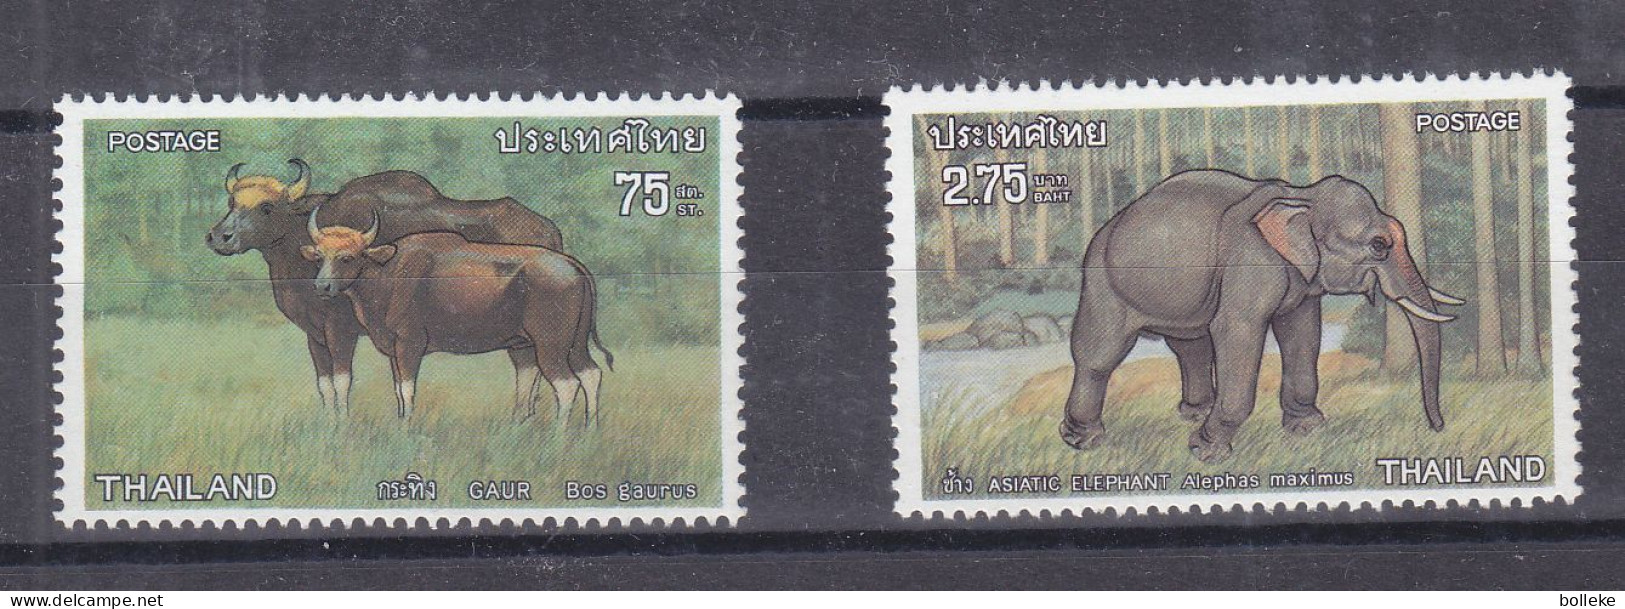 éléphants - Buffles - Thailande - Yvert 718 / 19 ** - Valeur 9 Euros - - Elefanti